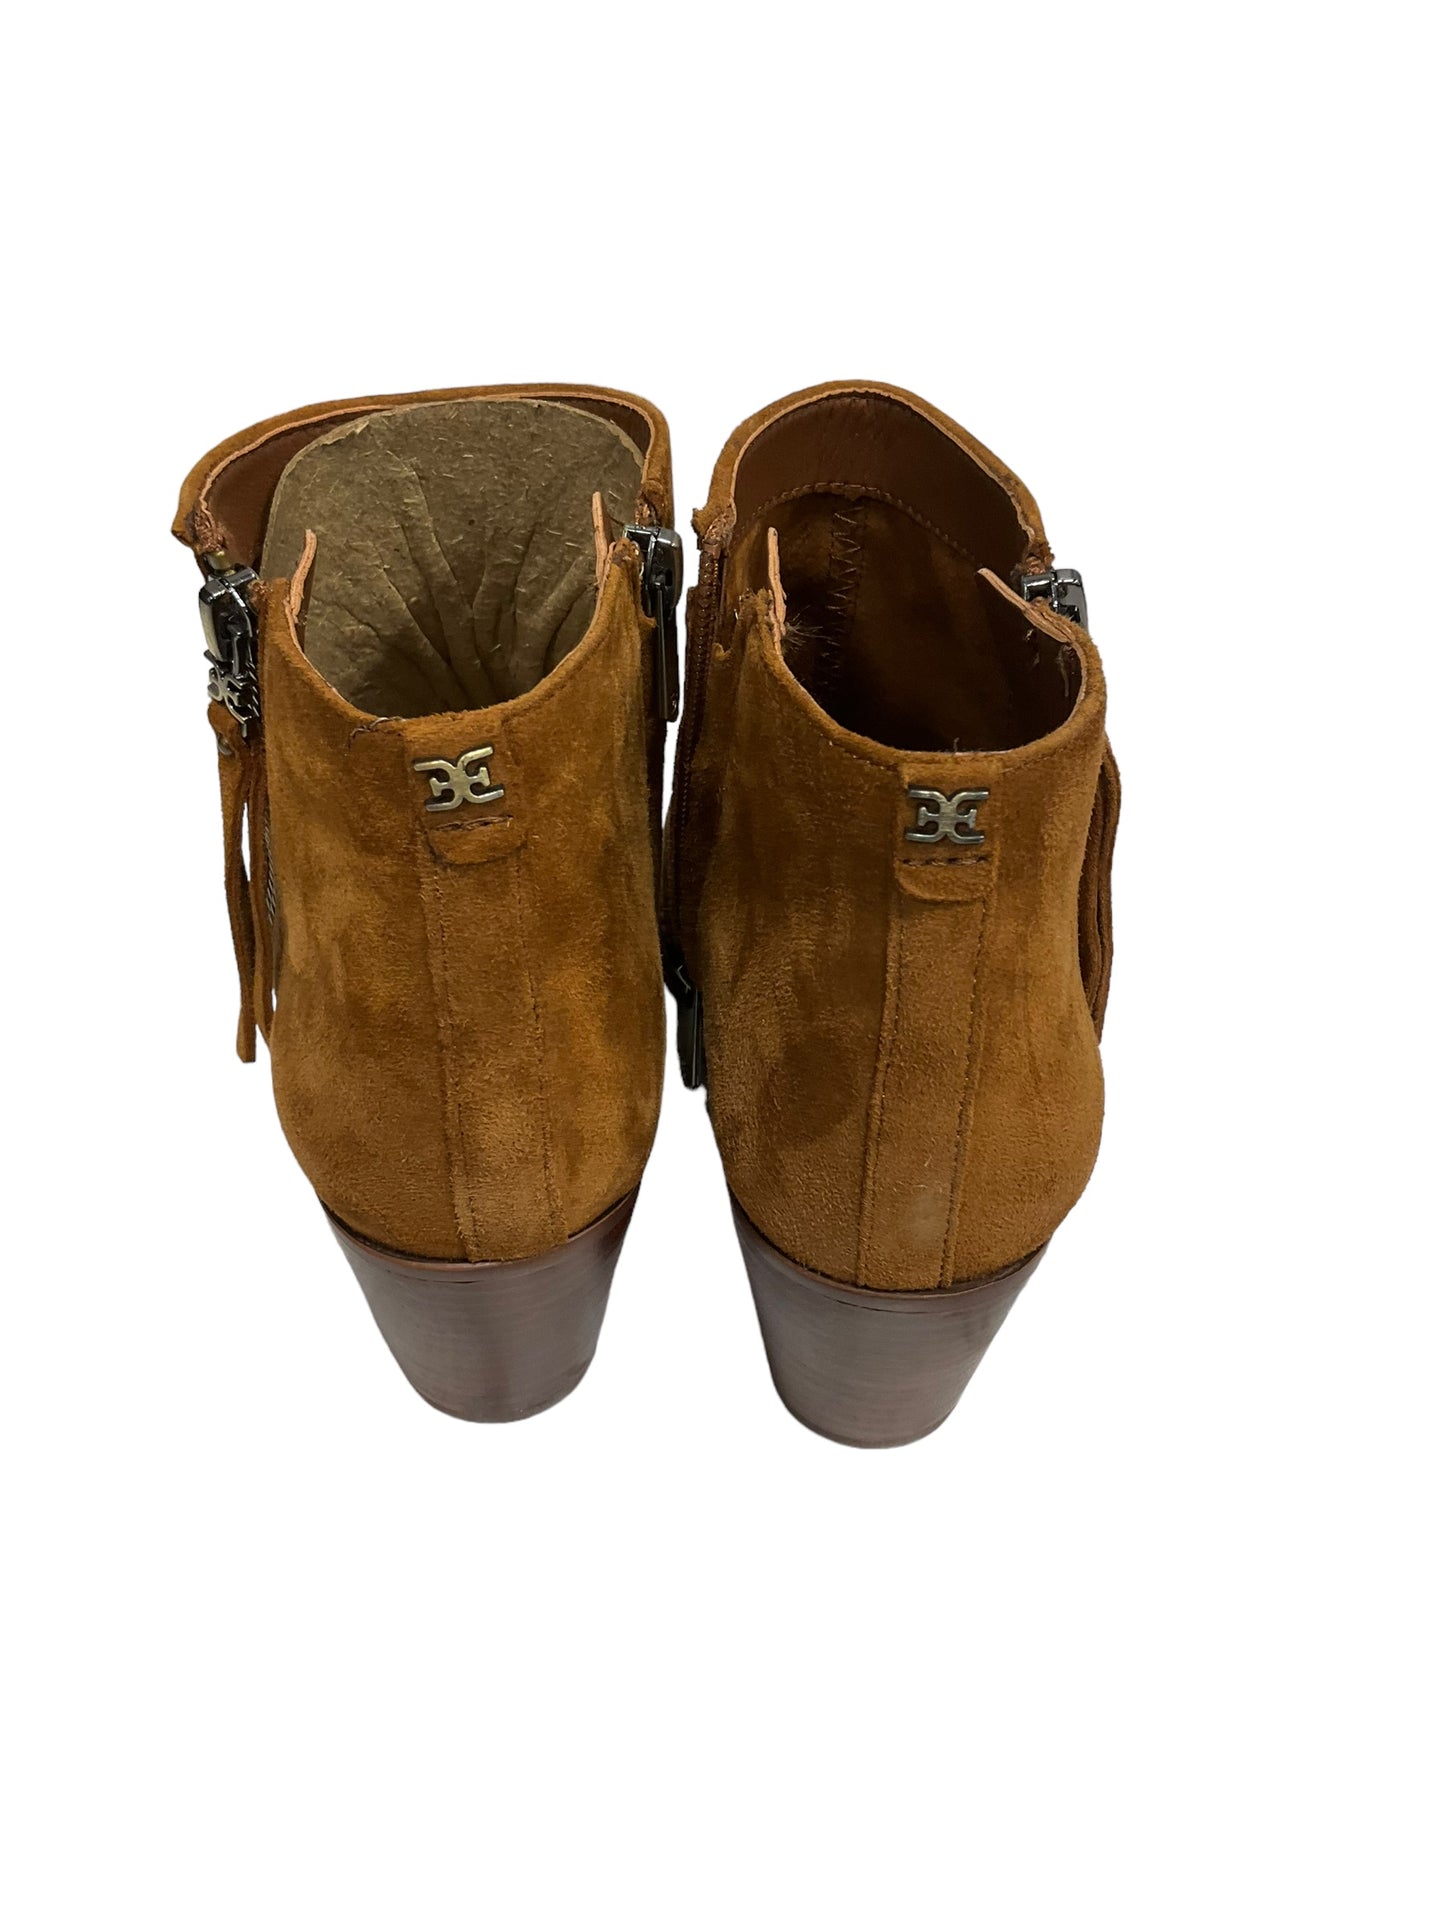 Boots Designer By Sam Edelman  Size: 8